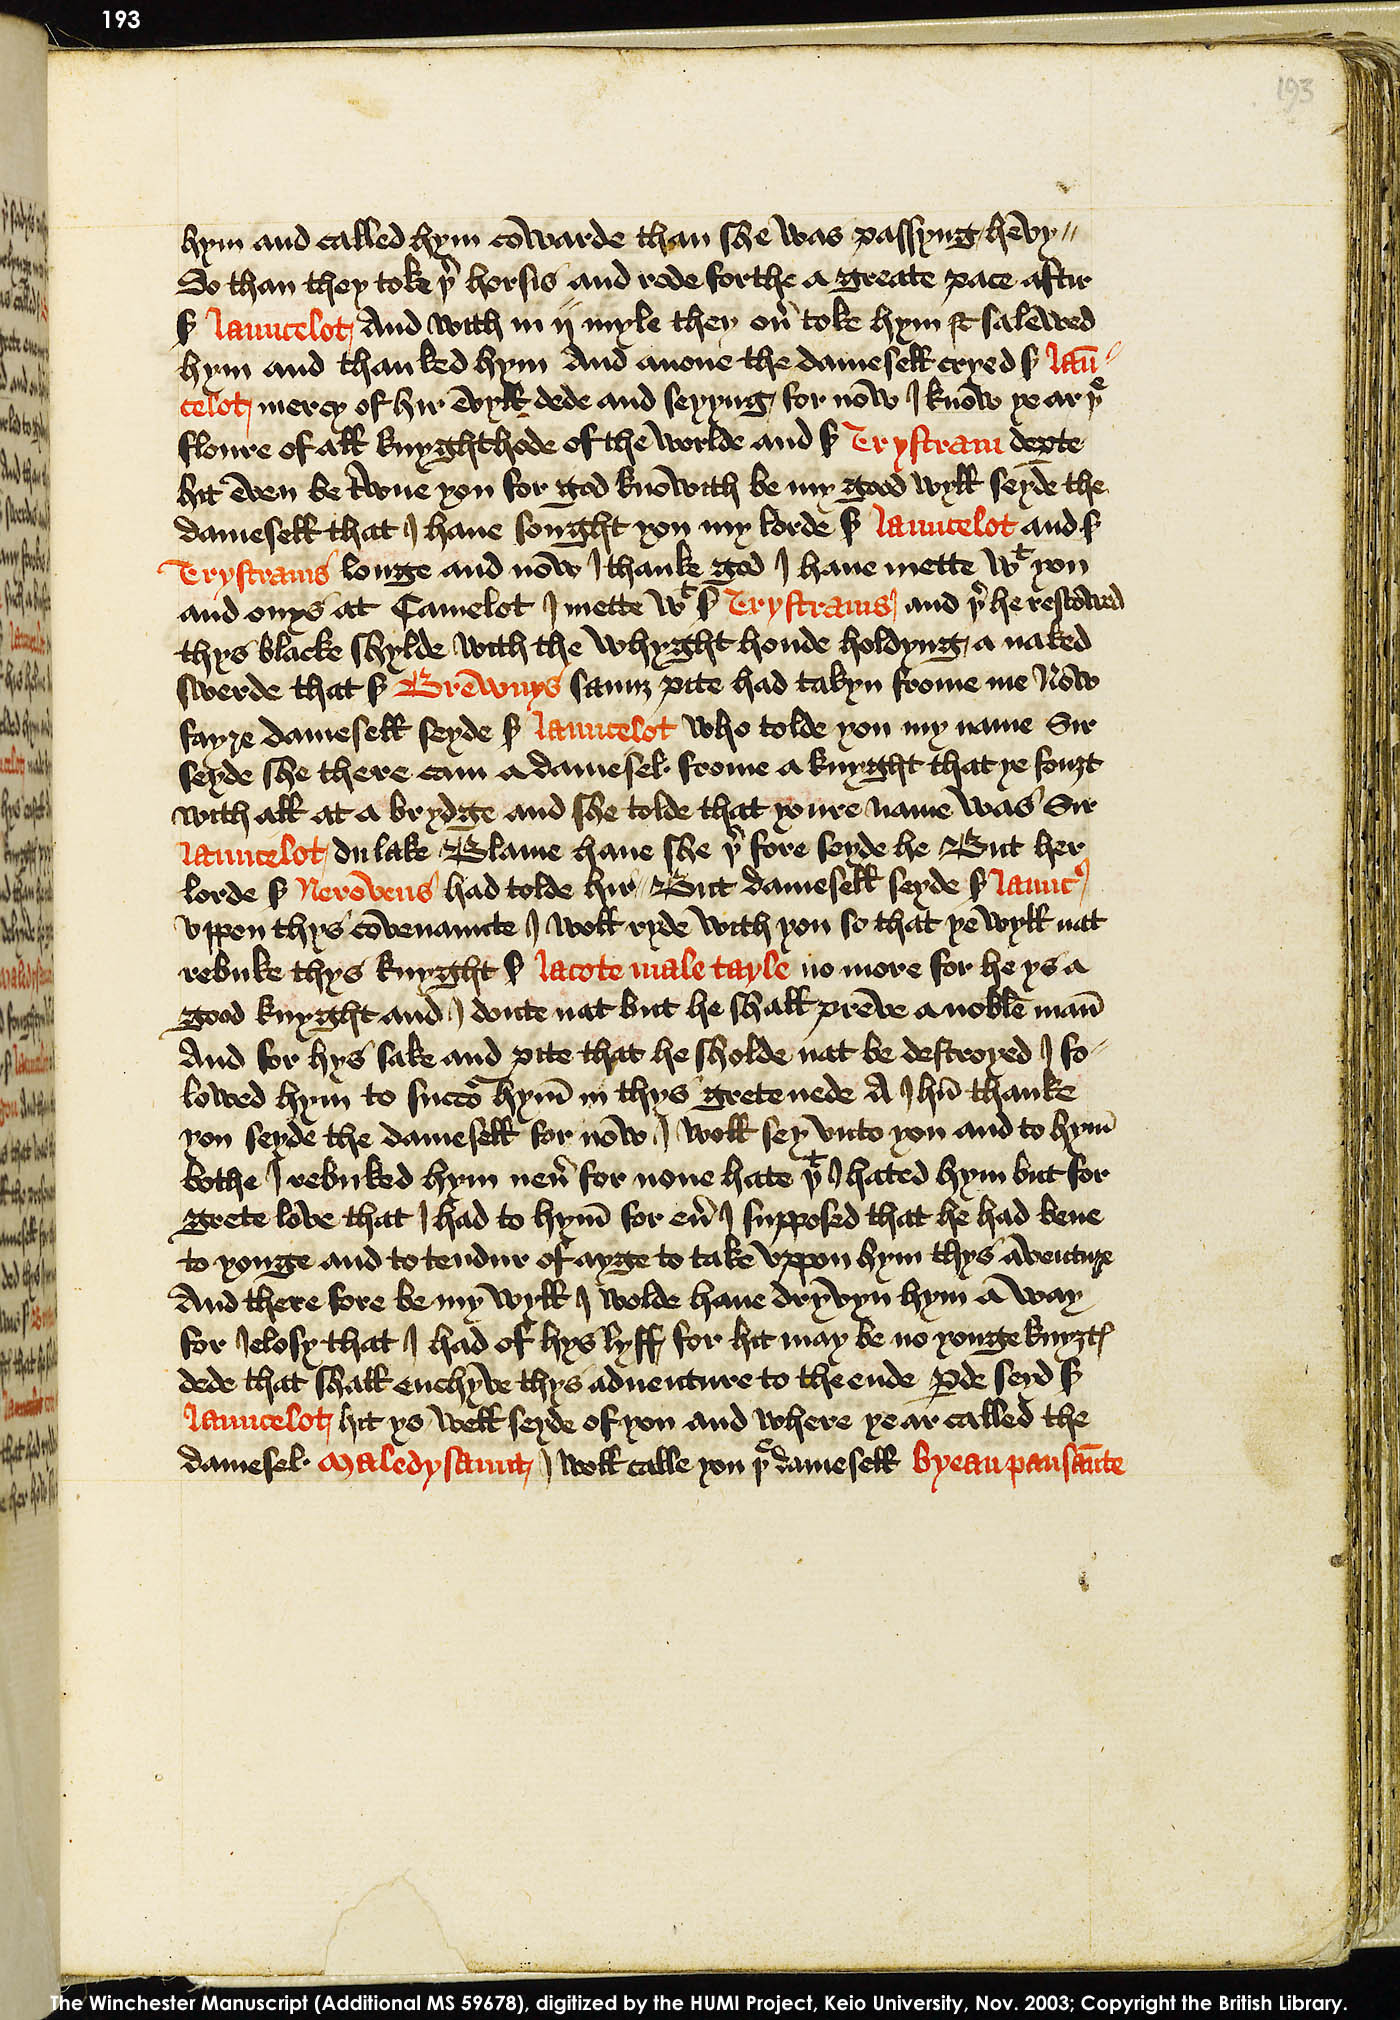 Folio 193r